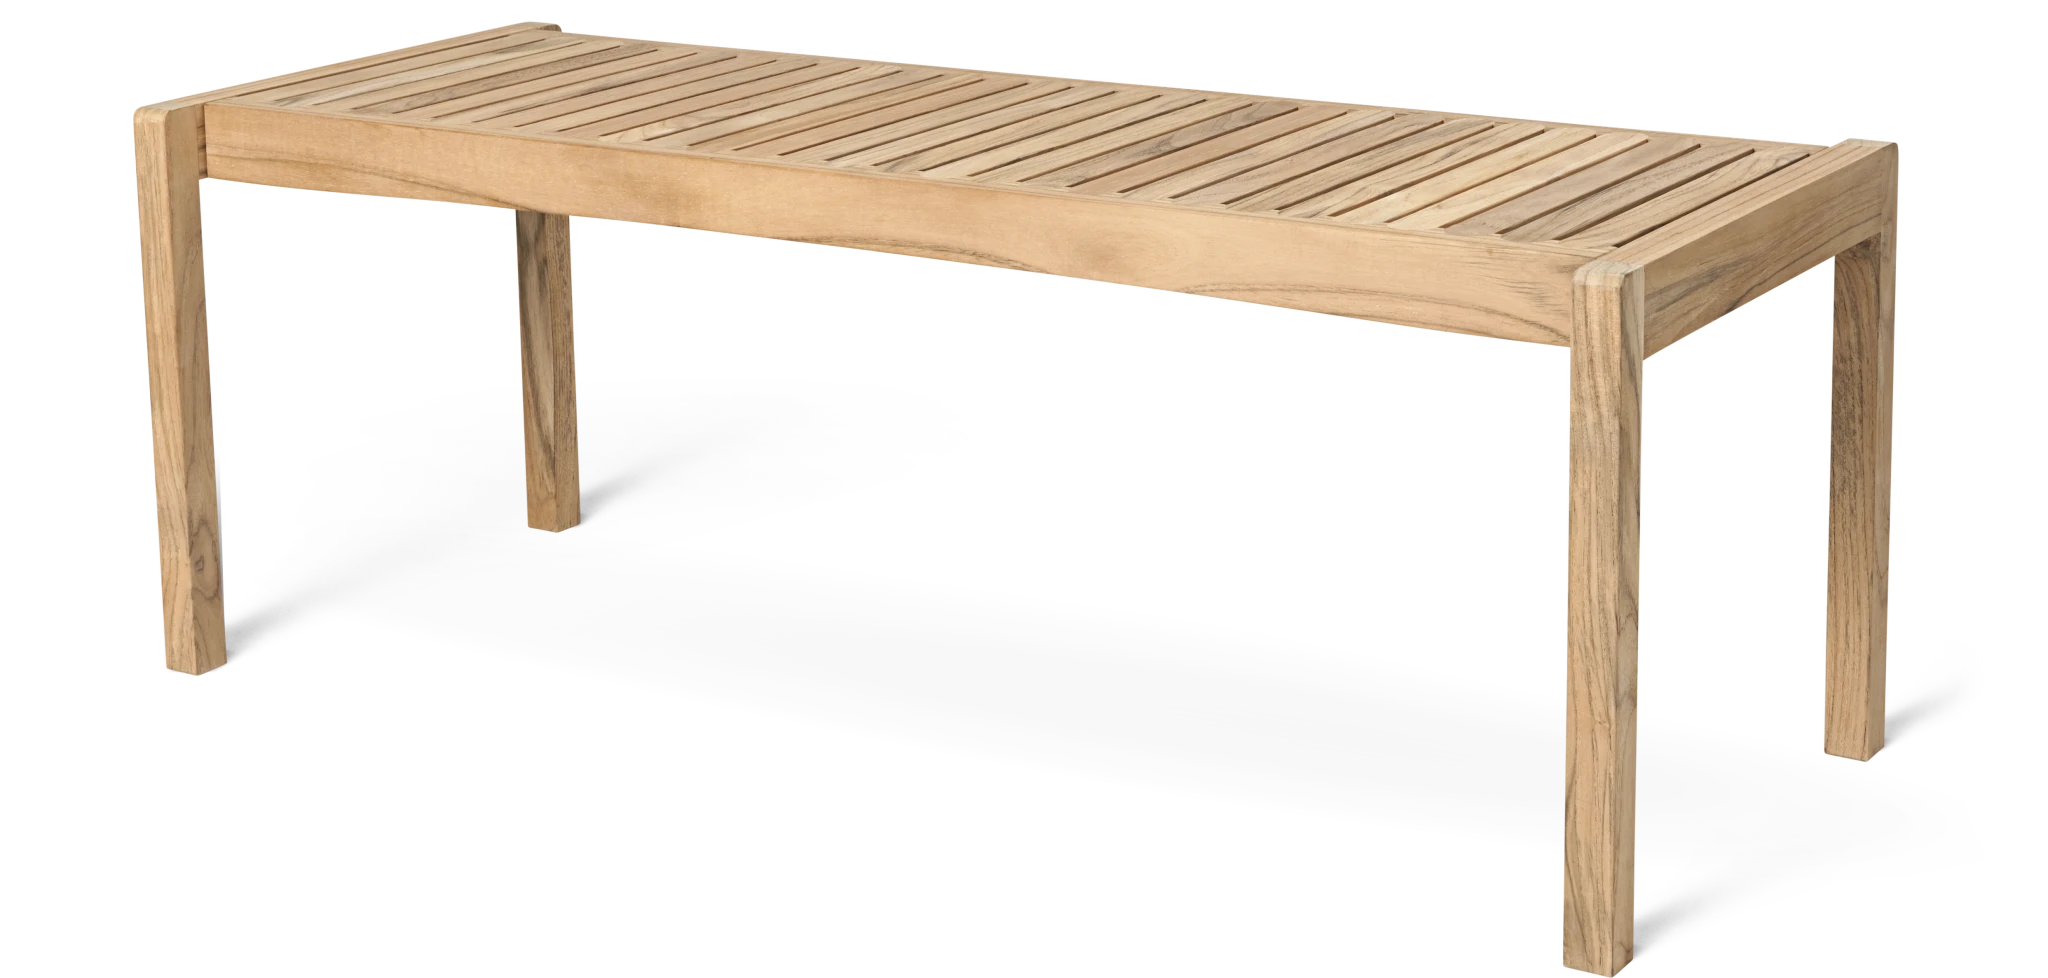 AH912 Outdoor Table/Bench - CARL HANSEN